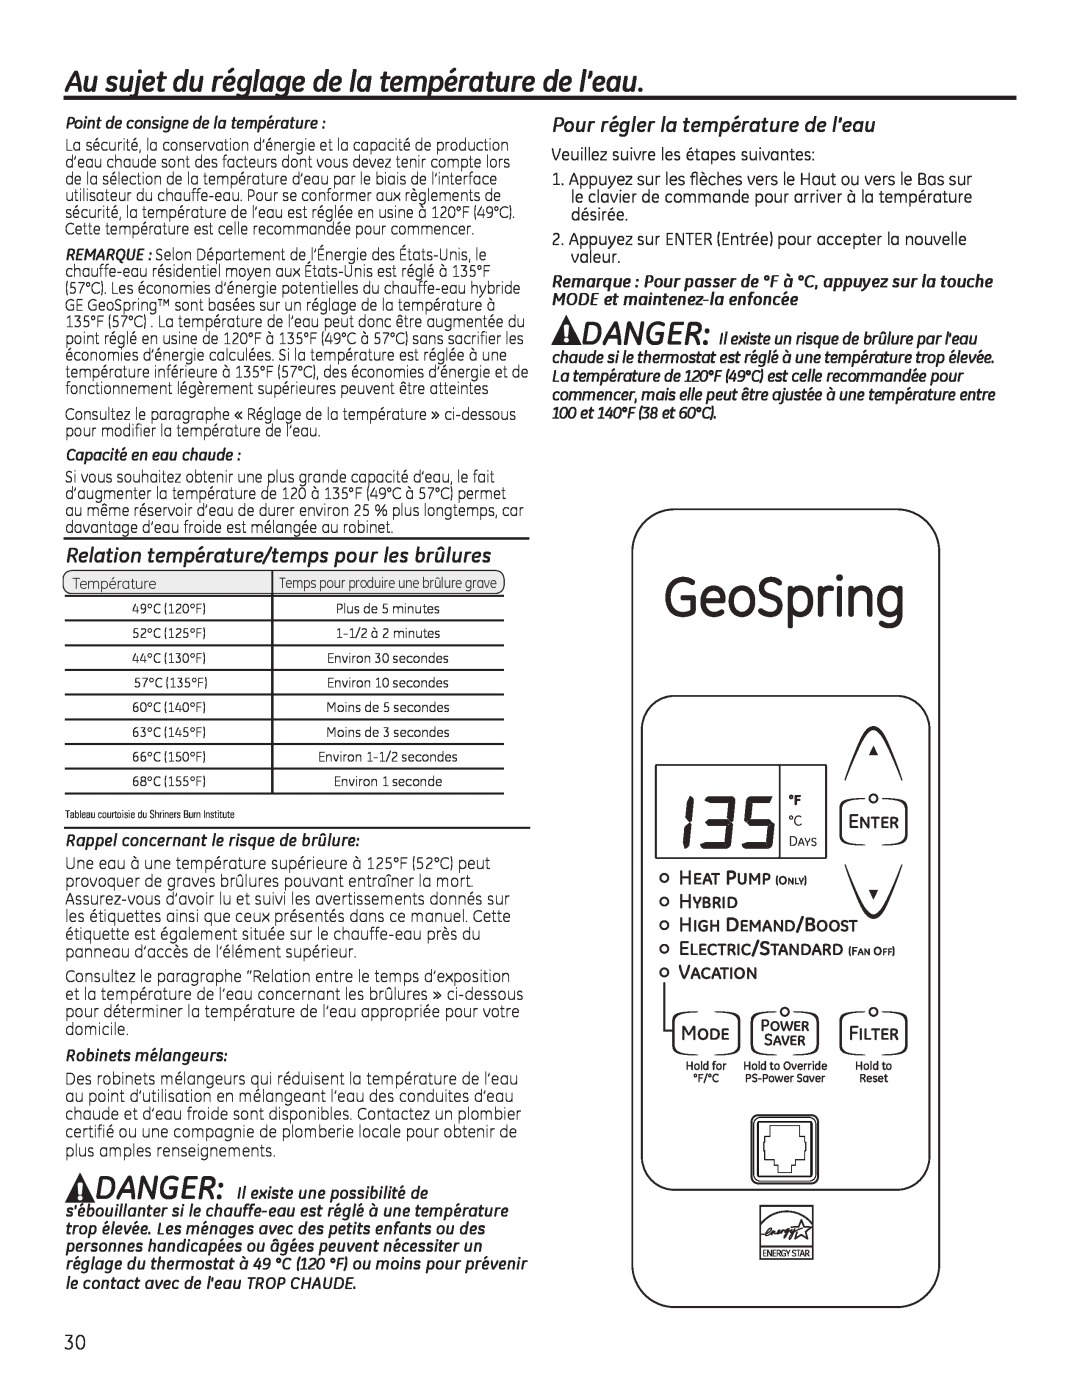 GE GEH50DEED Au sujet du réglage de la température de l’eau, Relation température/temps pour les brûlures, GeoSpring, Mode 